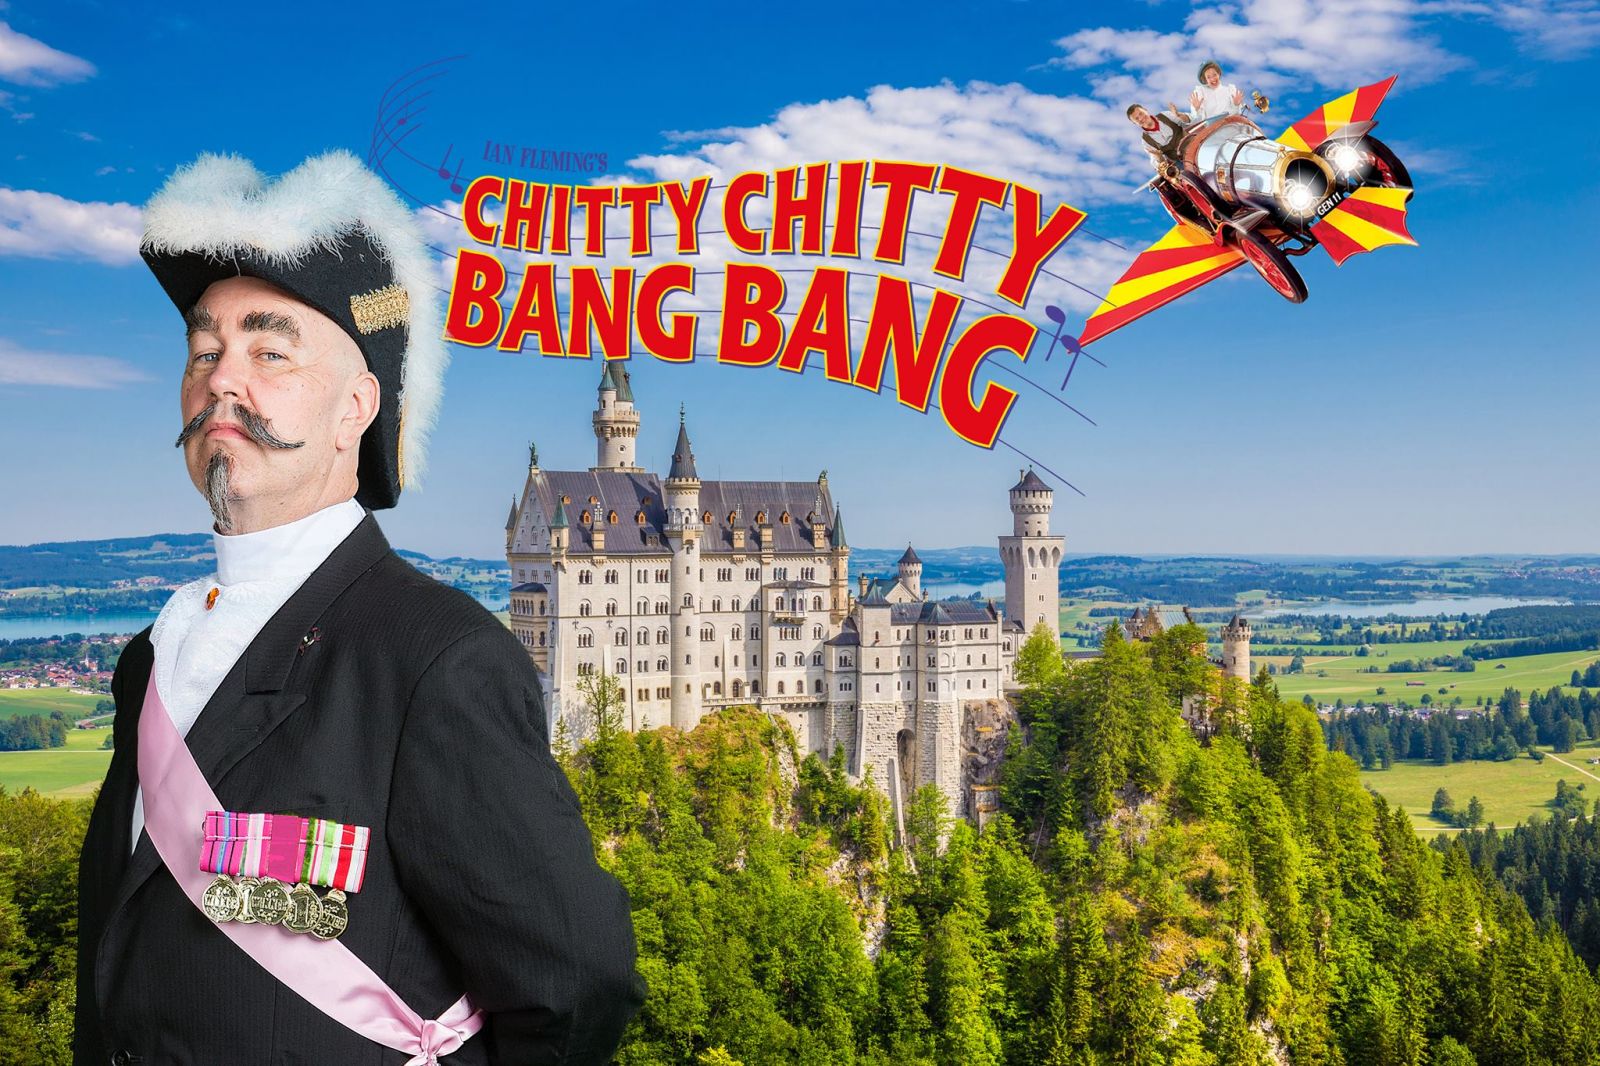 Chitty Chitty Bang Bang at The Bristol Hippodrome